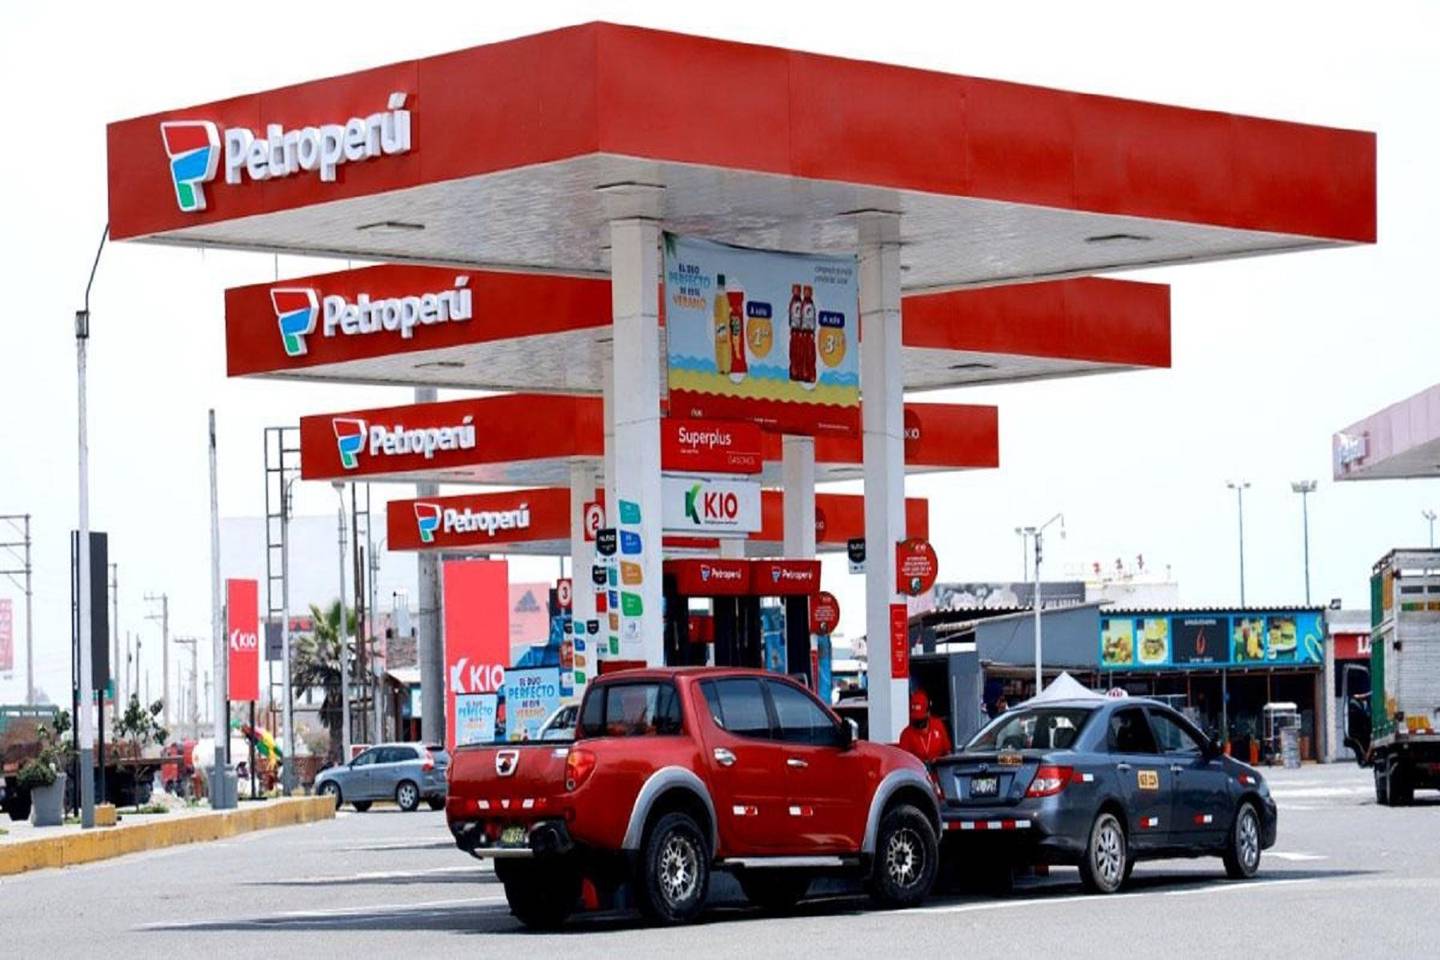 La situación financiera de Petroperú y su rating crediticio se encuentra en el grado especulativo para Fitch Ratings.dfd